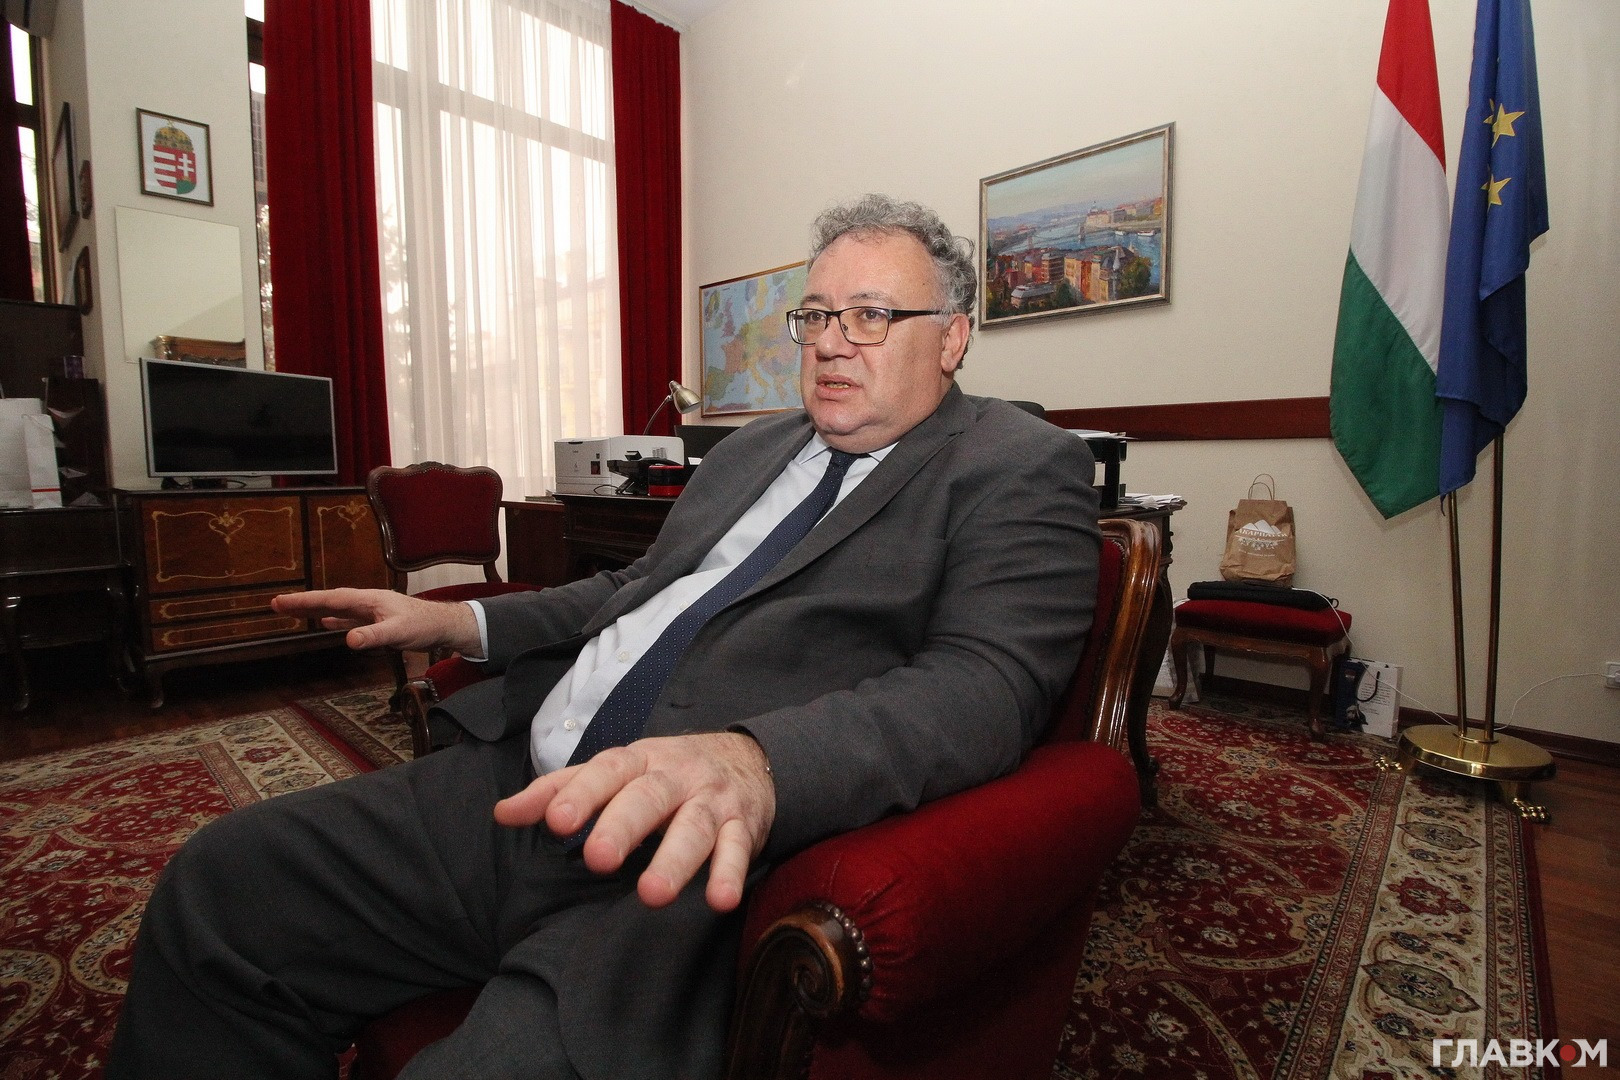 Посол Угорщини в Україні Іштван Ійдярто: Ставлення до Закарпаття і угорців Закарпаття не розділяє угорське суспільство, а об’єднує його